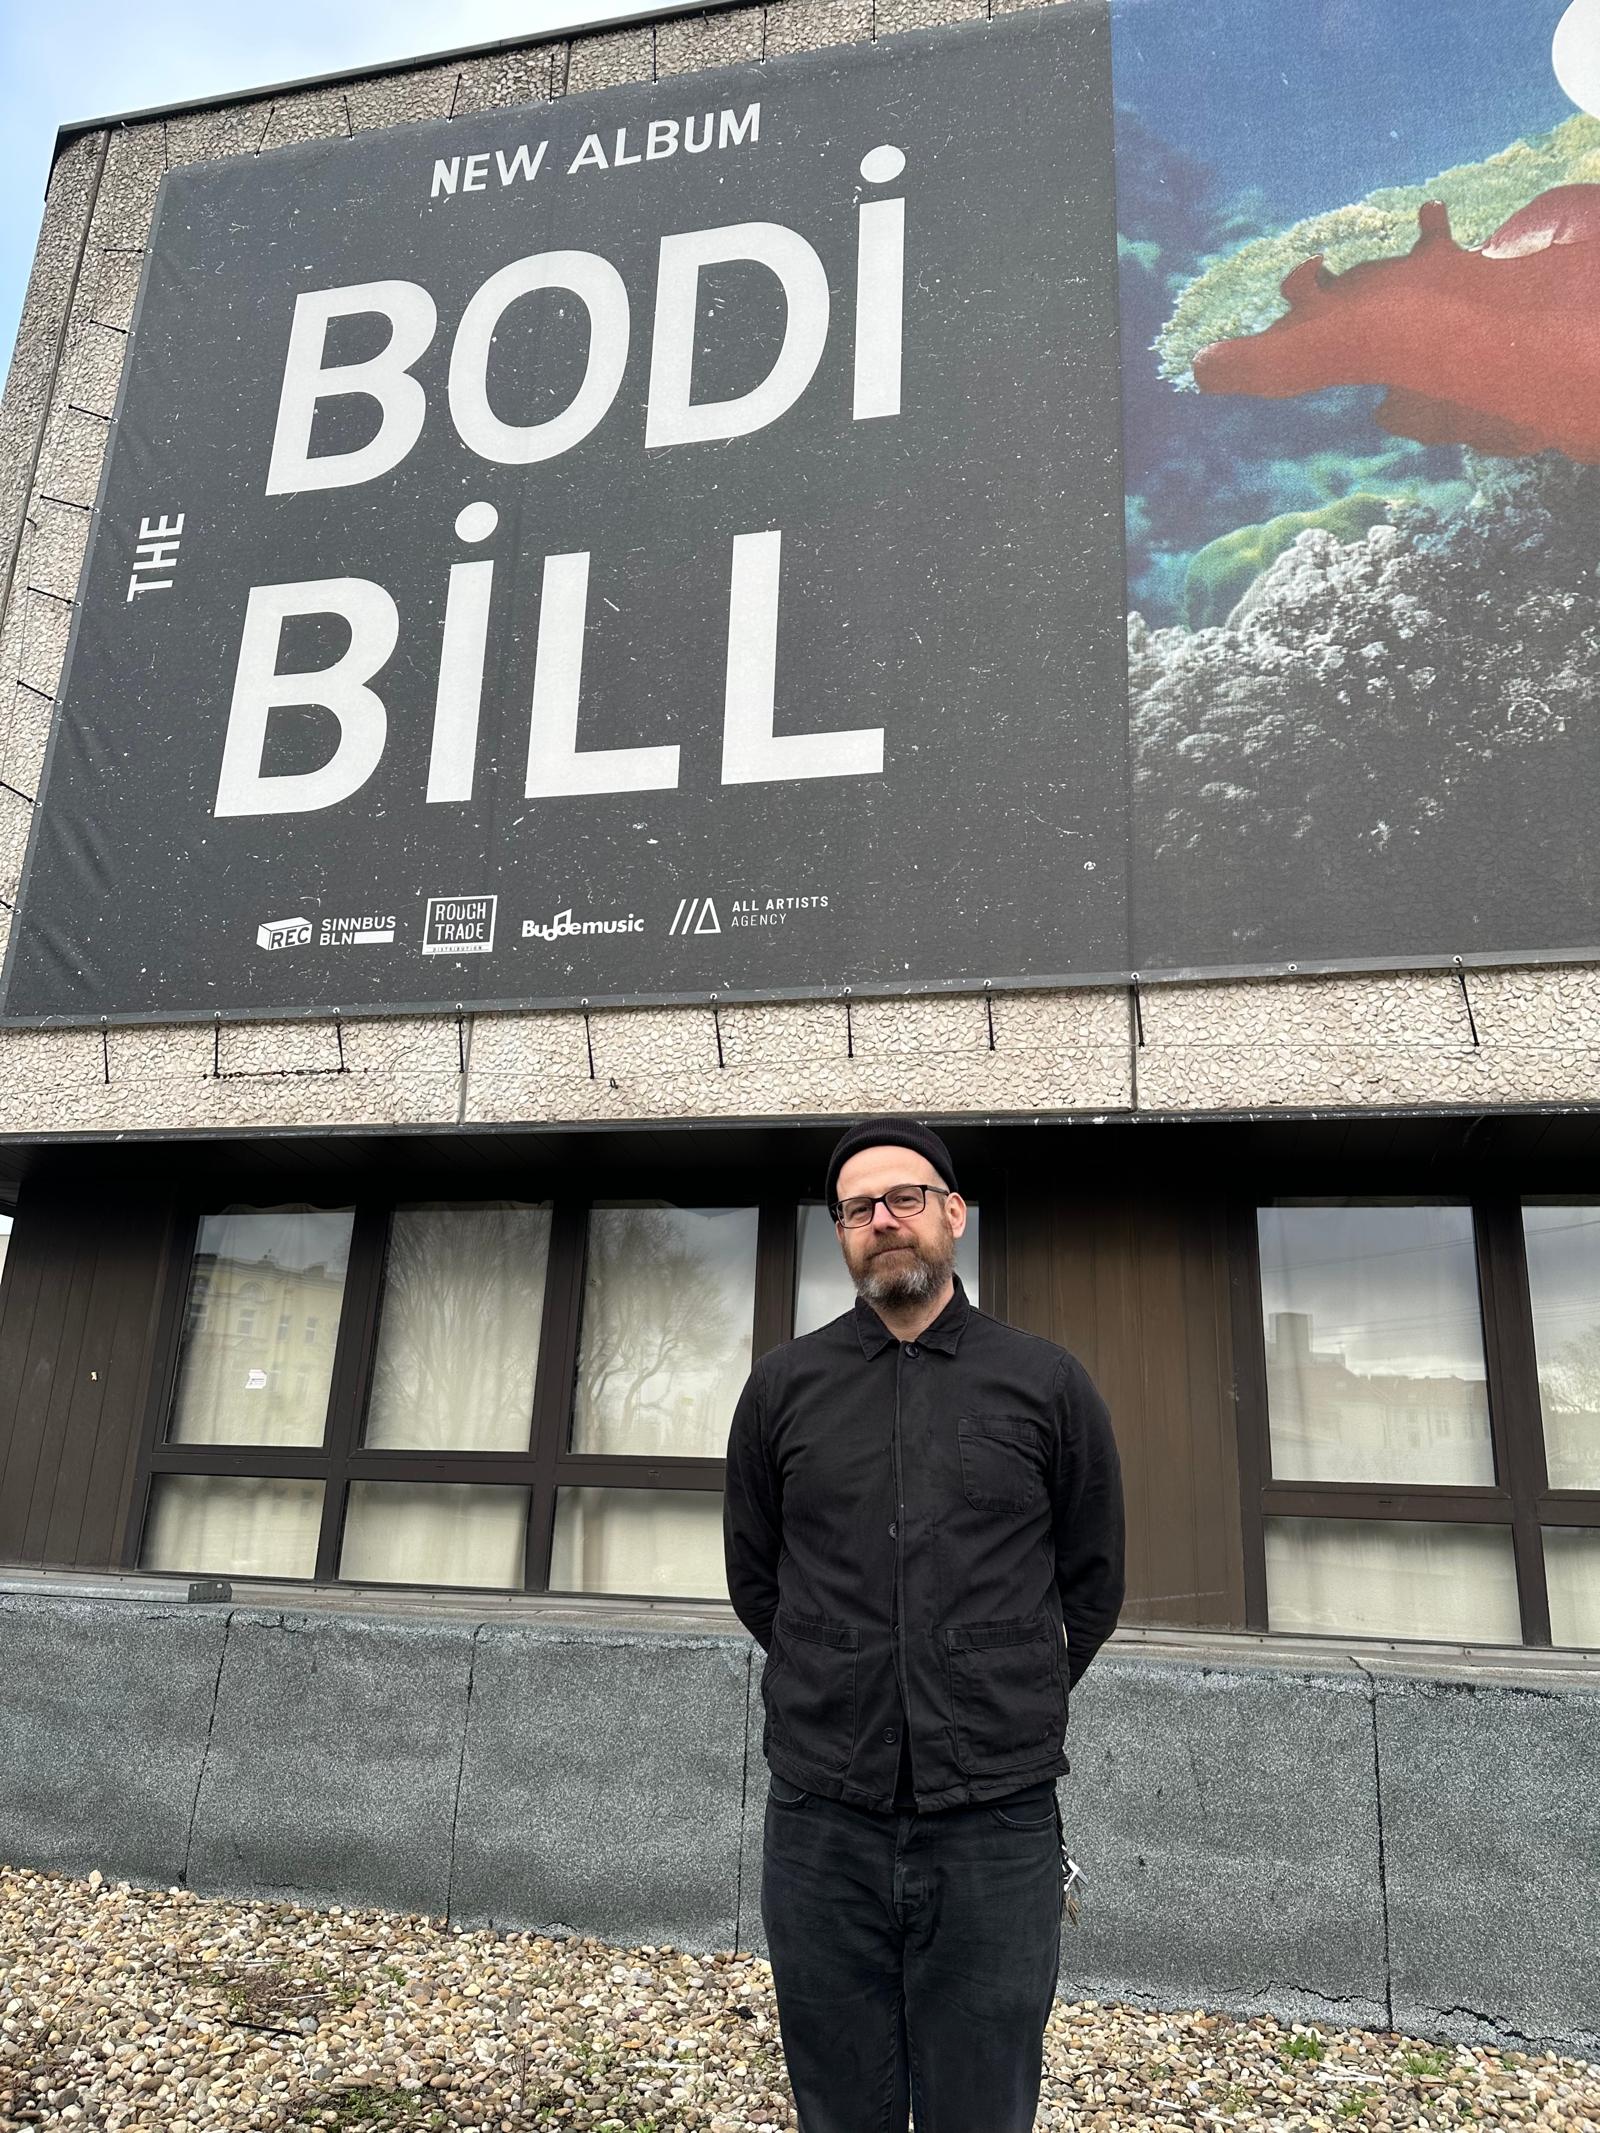 Daniel Spindler von Sinnbus vor dem Bodi Bill Plakat